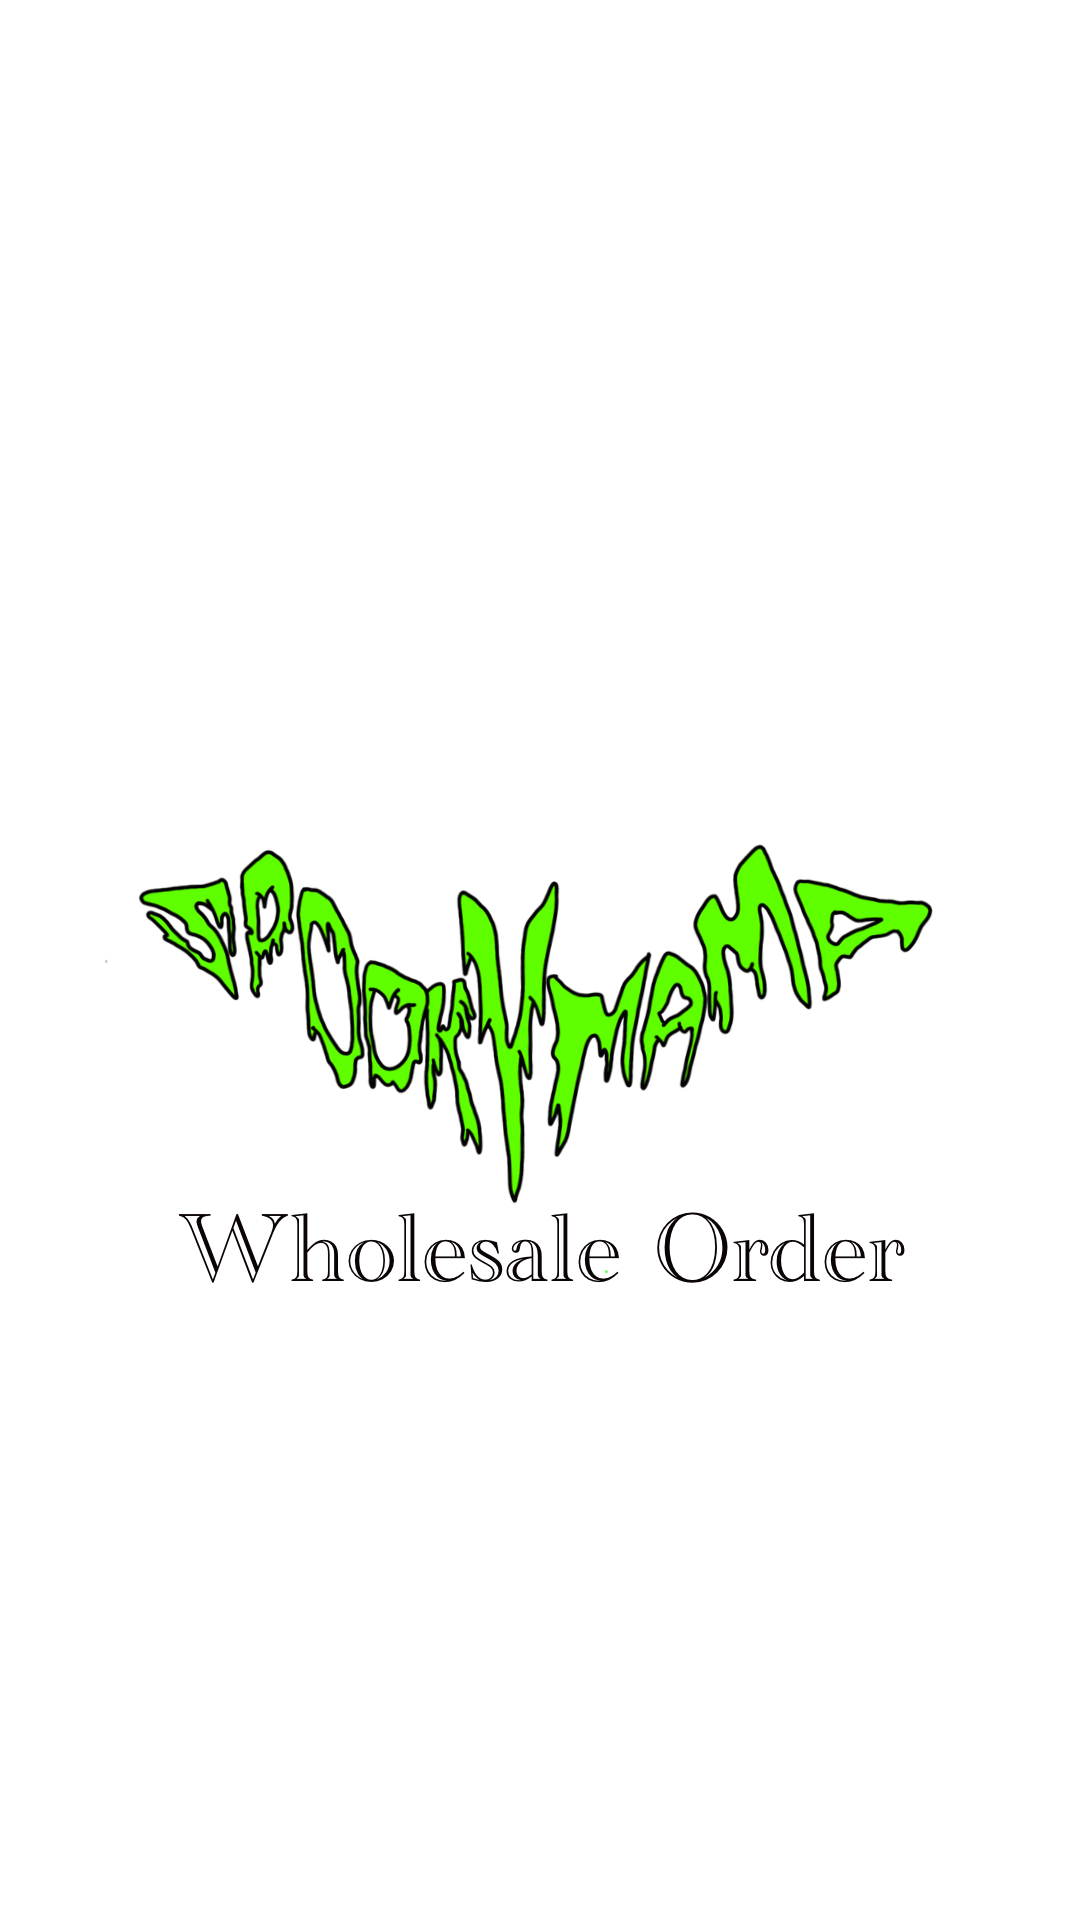 Wholesale - Black Cat Bodega